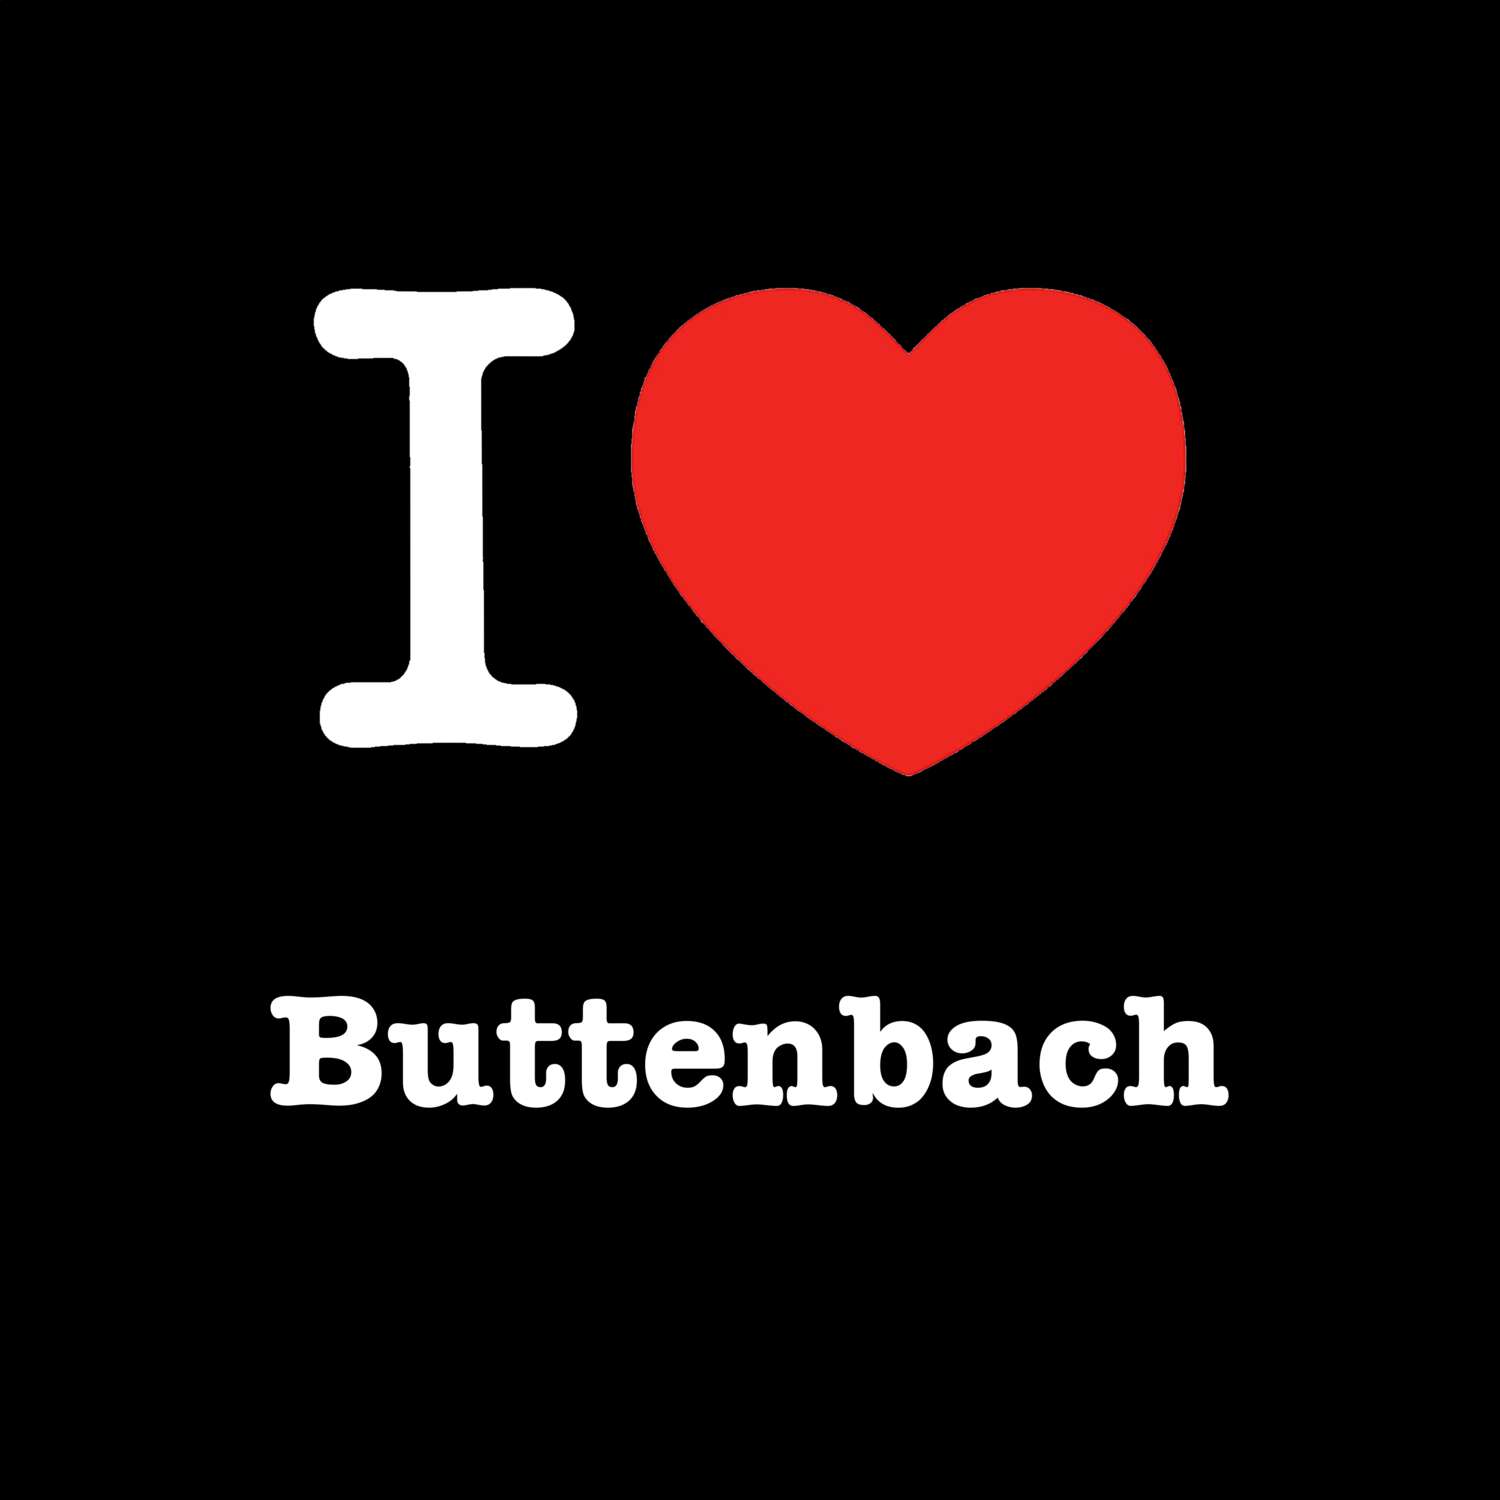 Buttenbach T-Shirt »I love«